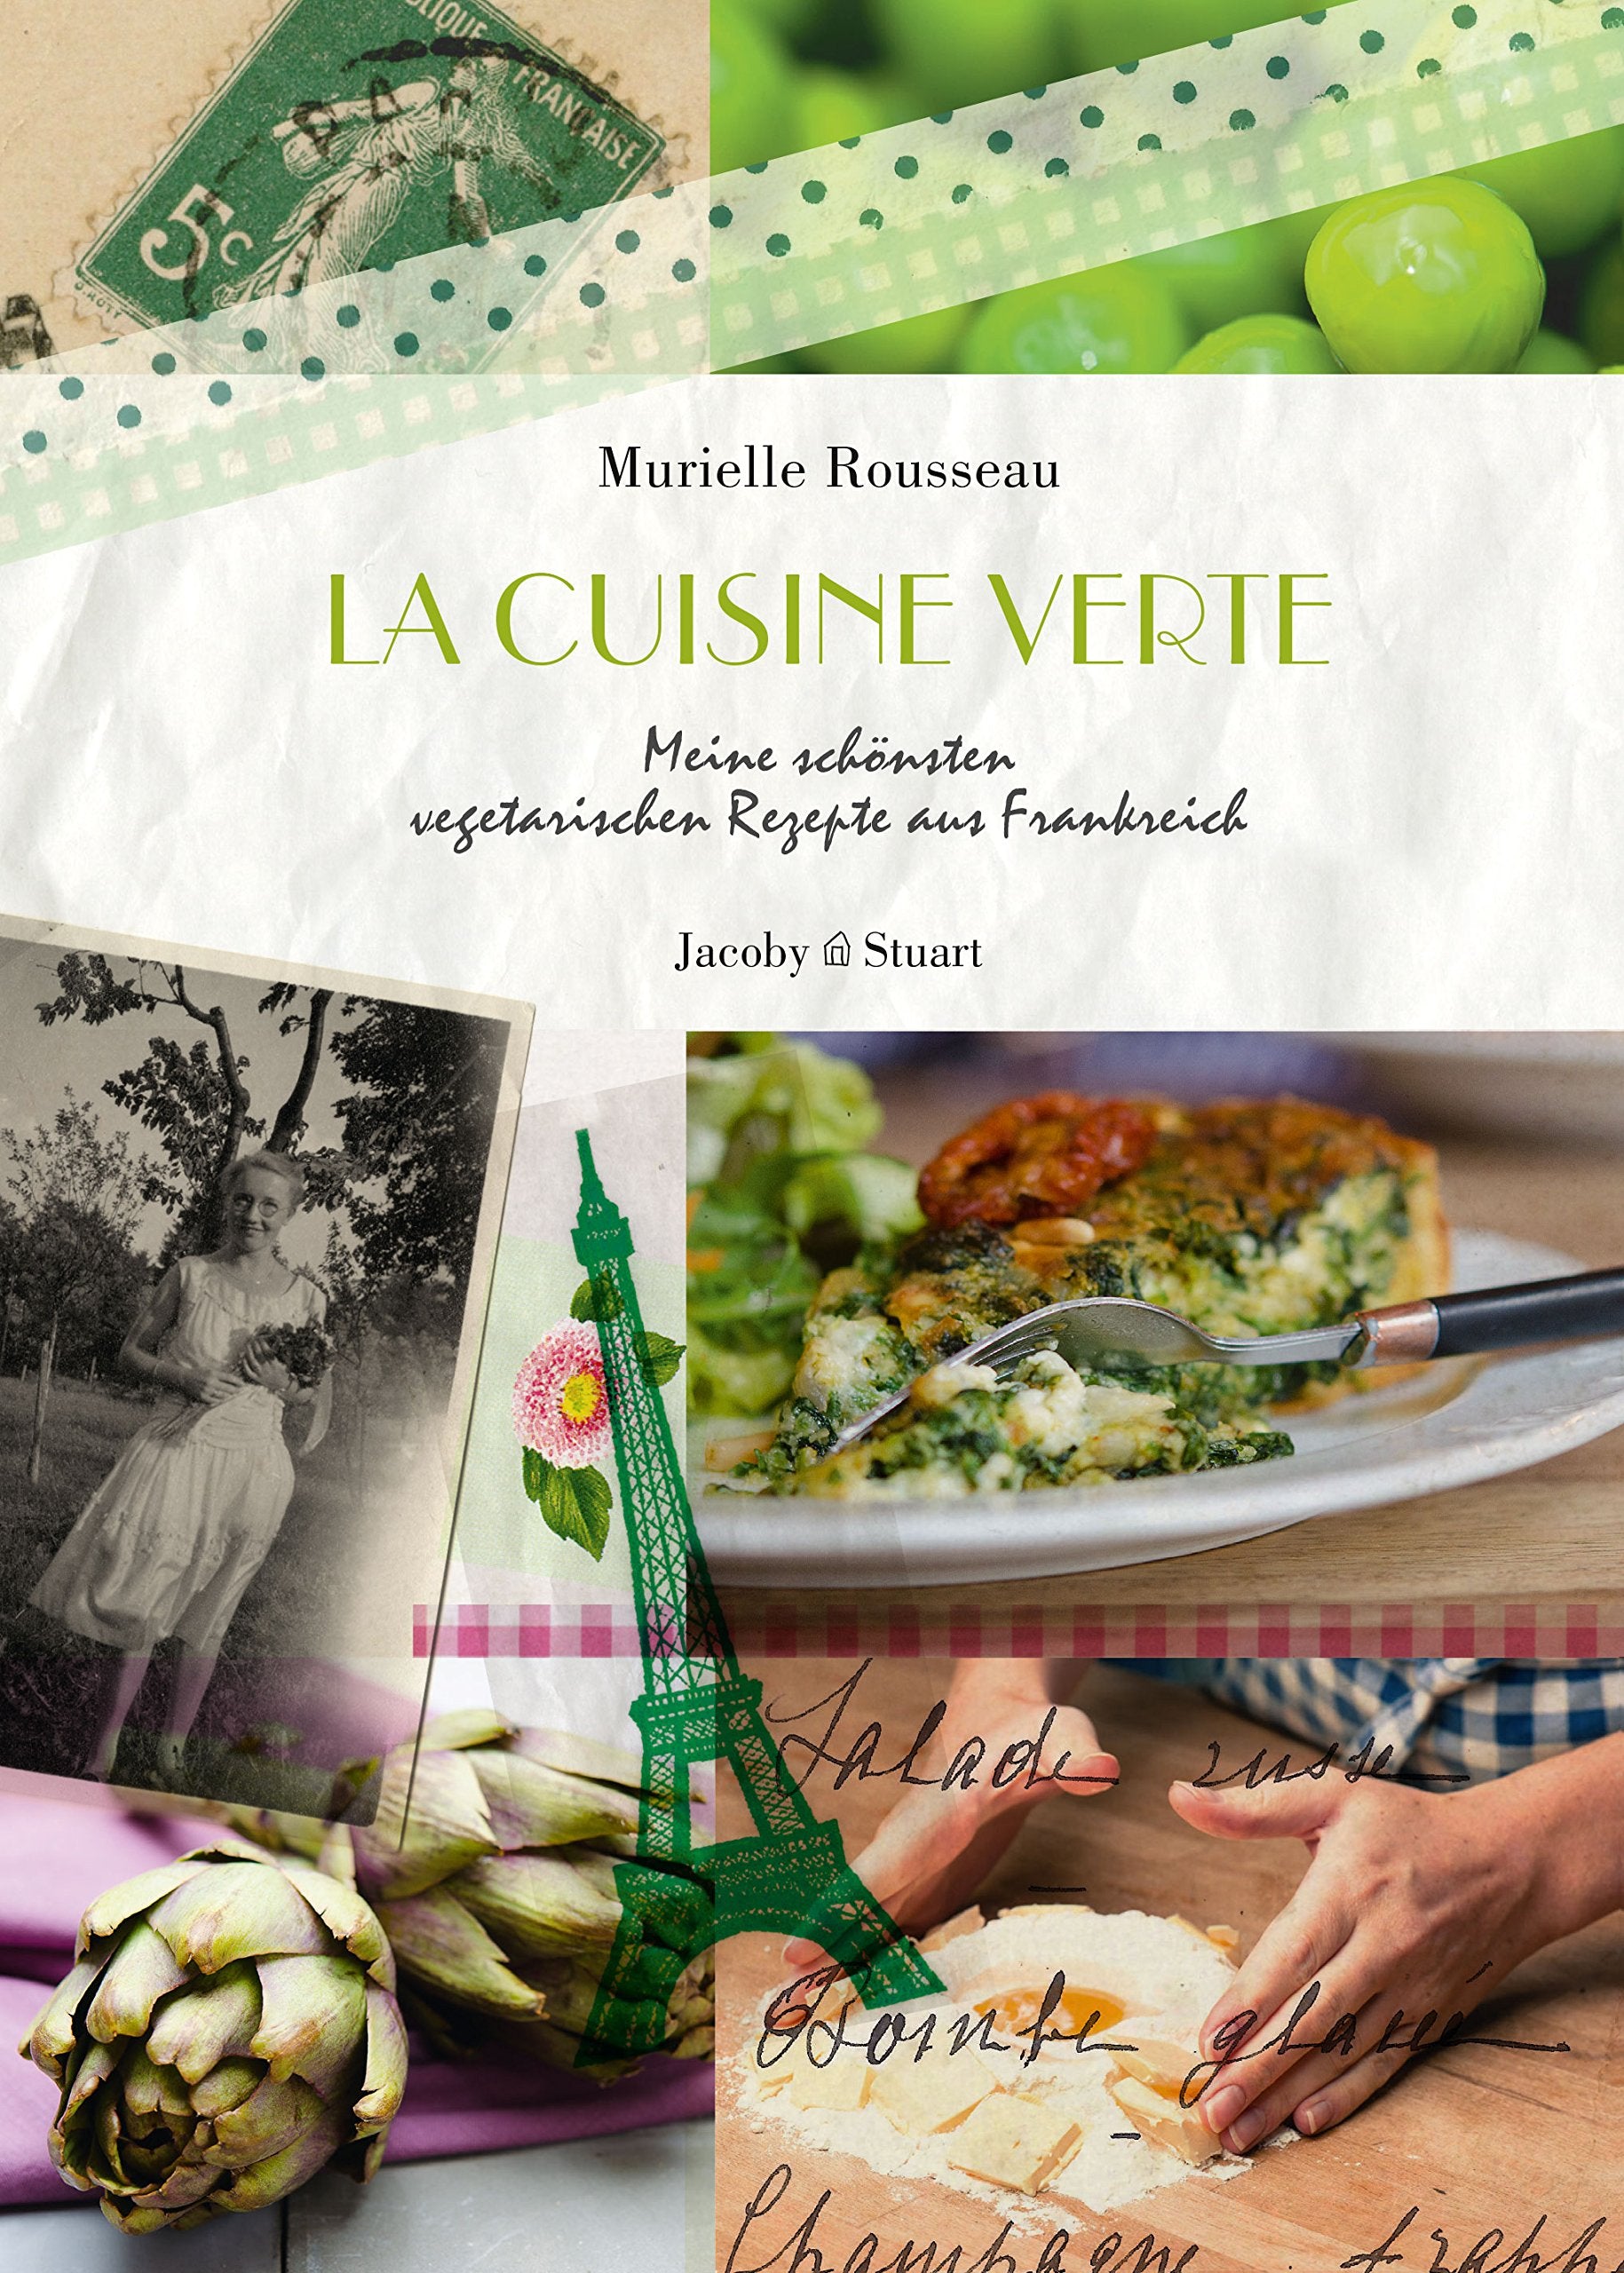 La cuisine verte: Meine schönsten vegetarischen Rezepte aus Frankreich